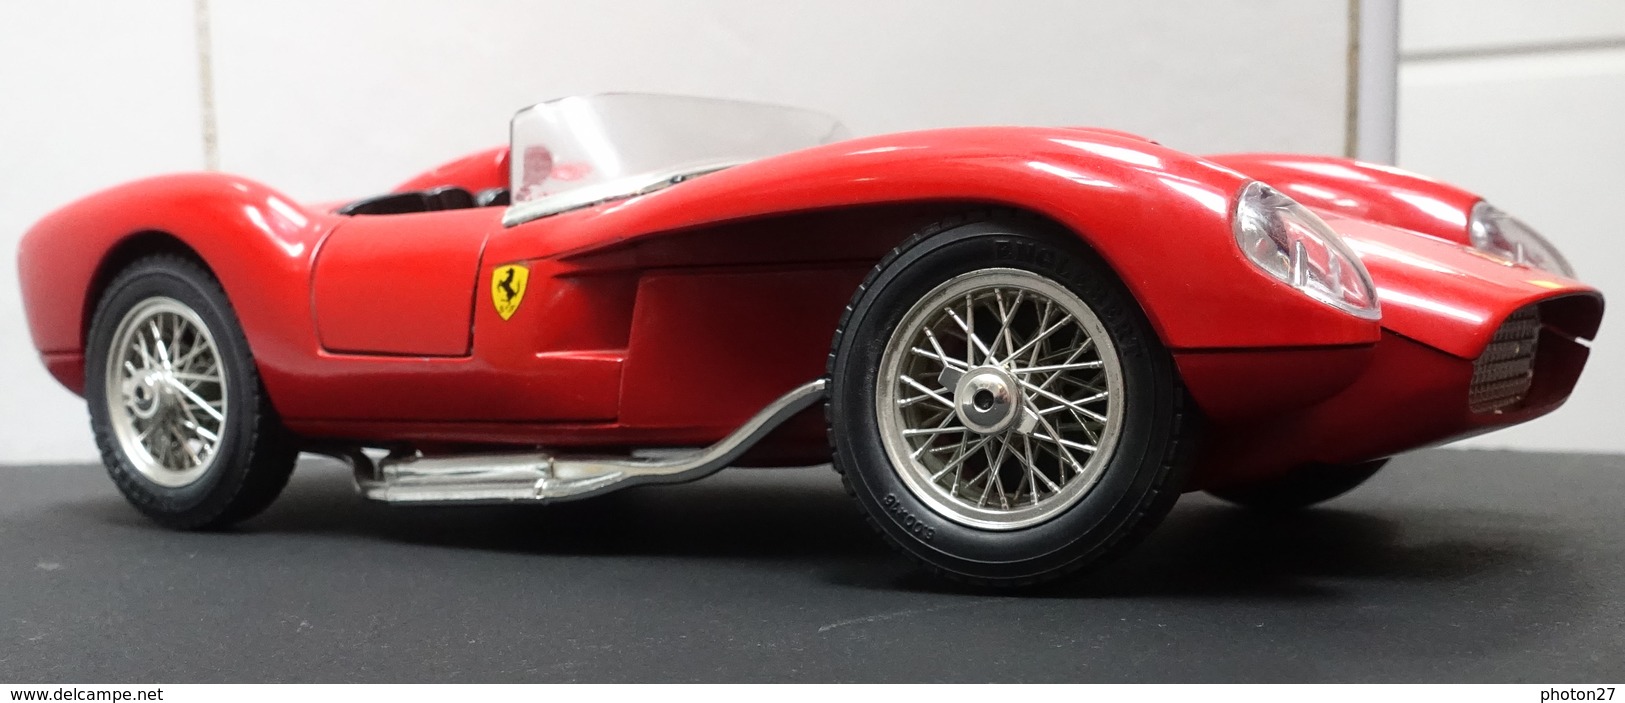 Burago 1:18 1957 Ferrari 250 Testarossa